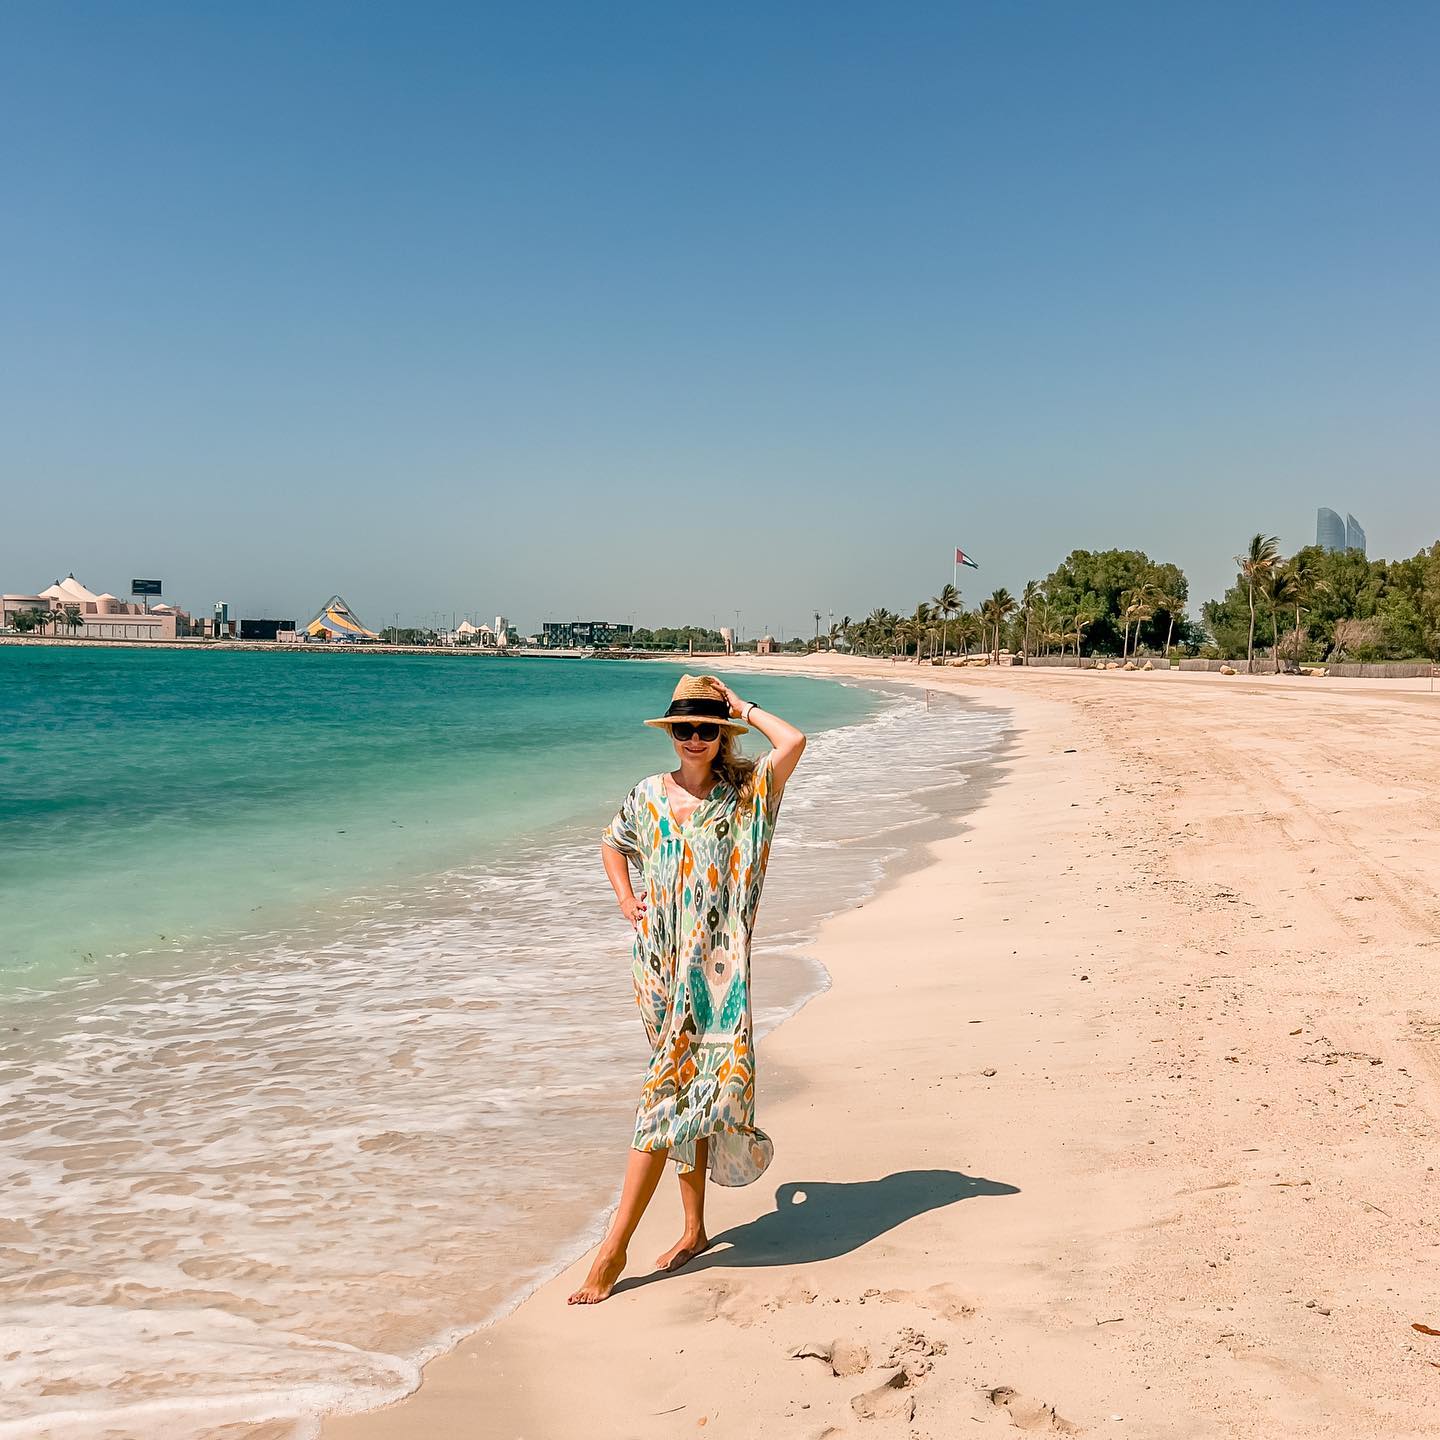 Vacation vibes ☀️🌴🇦🇪

Gdyby nie ta wilgotność to byłoby super 👌🏼

U nas dzieciaki od tygodnia w szkole wiec to idealny czas na plażowanie w ciszy i spokoju 😜 Ale trzeba jeszcze poczekac do pazdziernika bo jest bardzo goraco wciaz.
.
.
Kto sie cieszy ze szkoły?? 
.
.
 
Vacation vibes • beach time • abu dhabi 

#vacationvibes🌴 #getlostwithwizz #inabudhabi🇦🇪 #emiratespalace #motherhoodmoments #vitaminesea